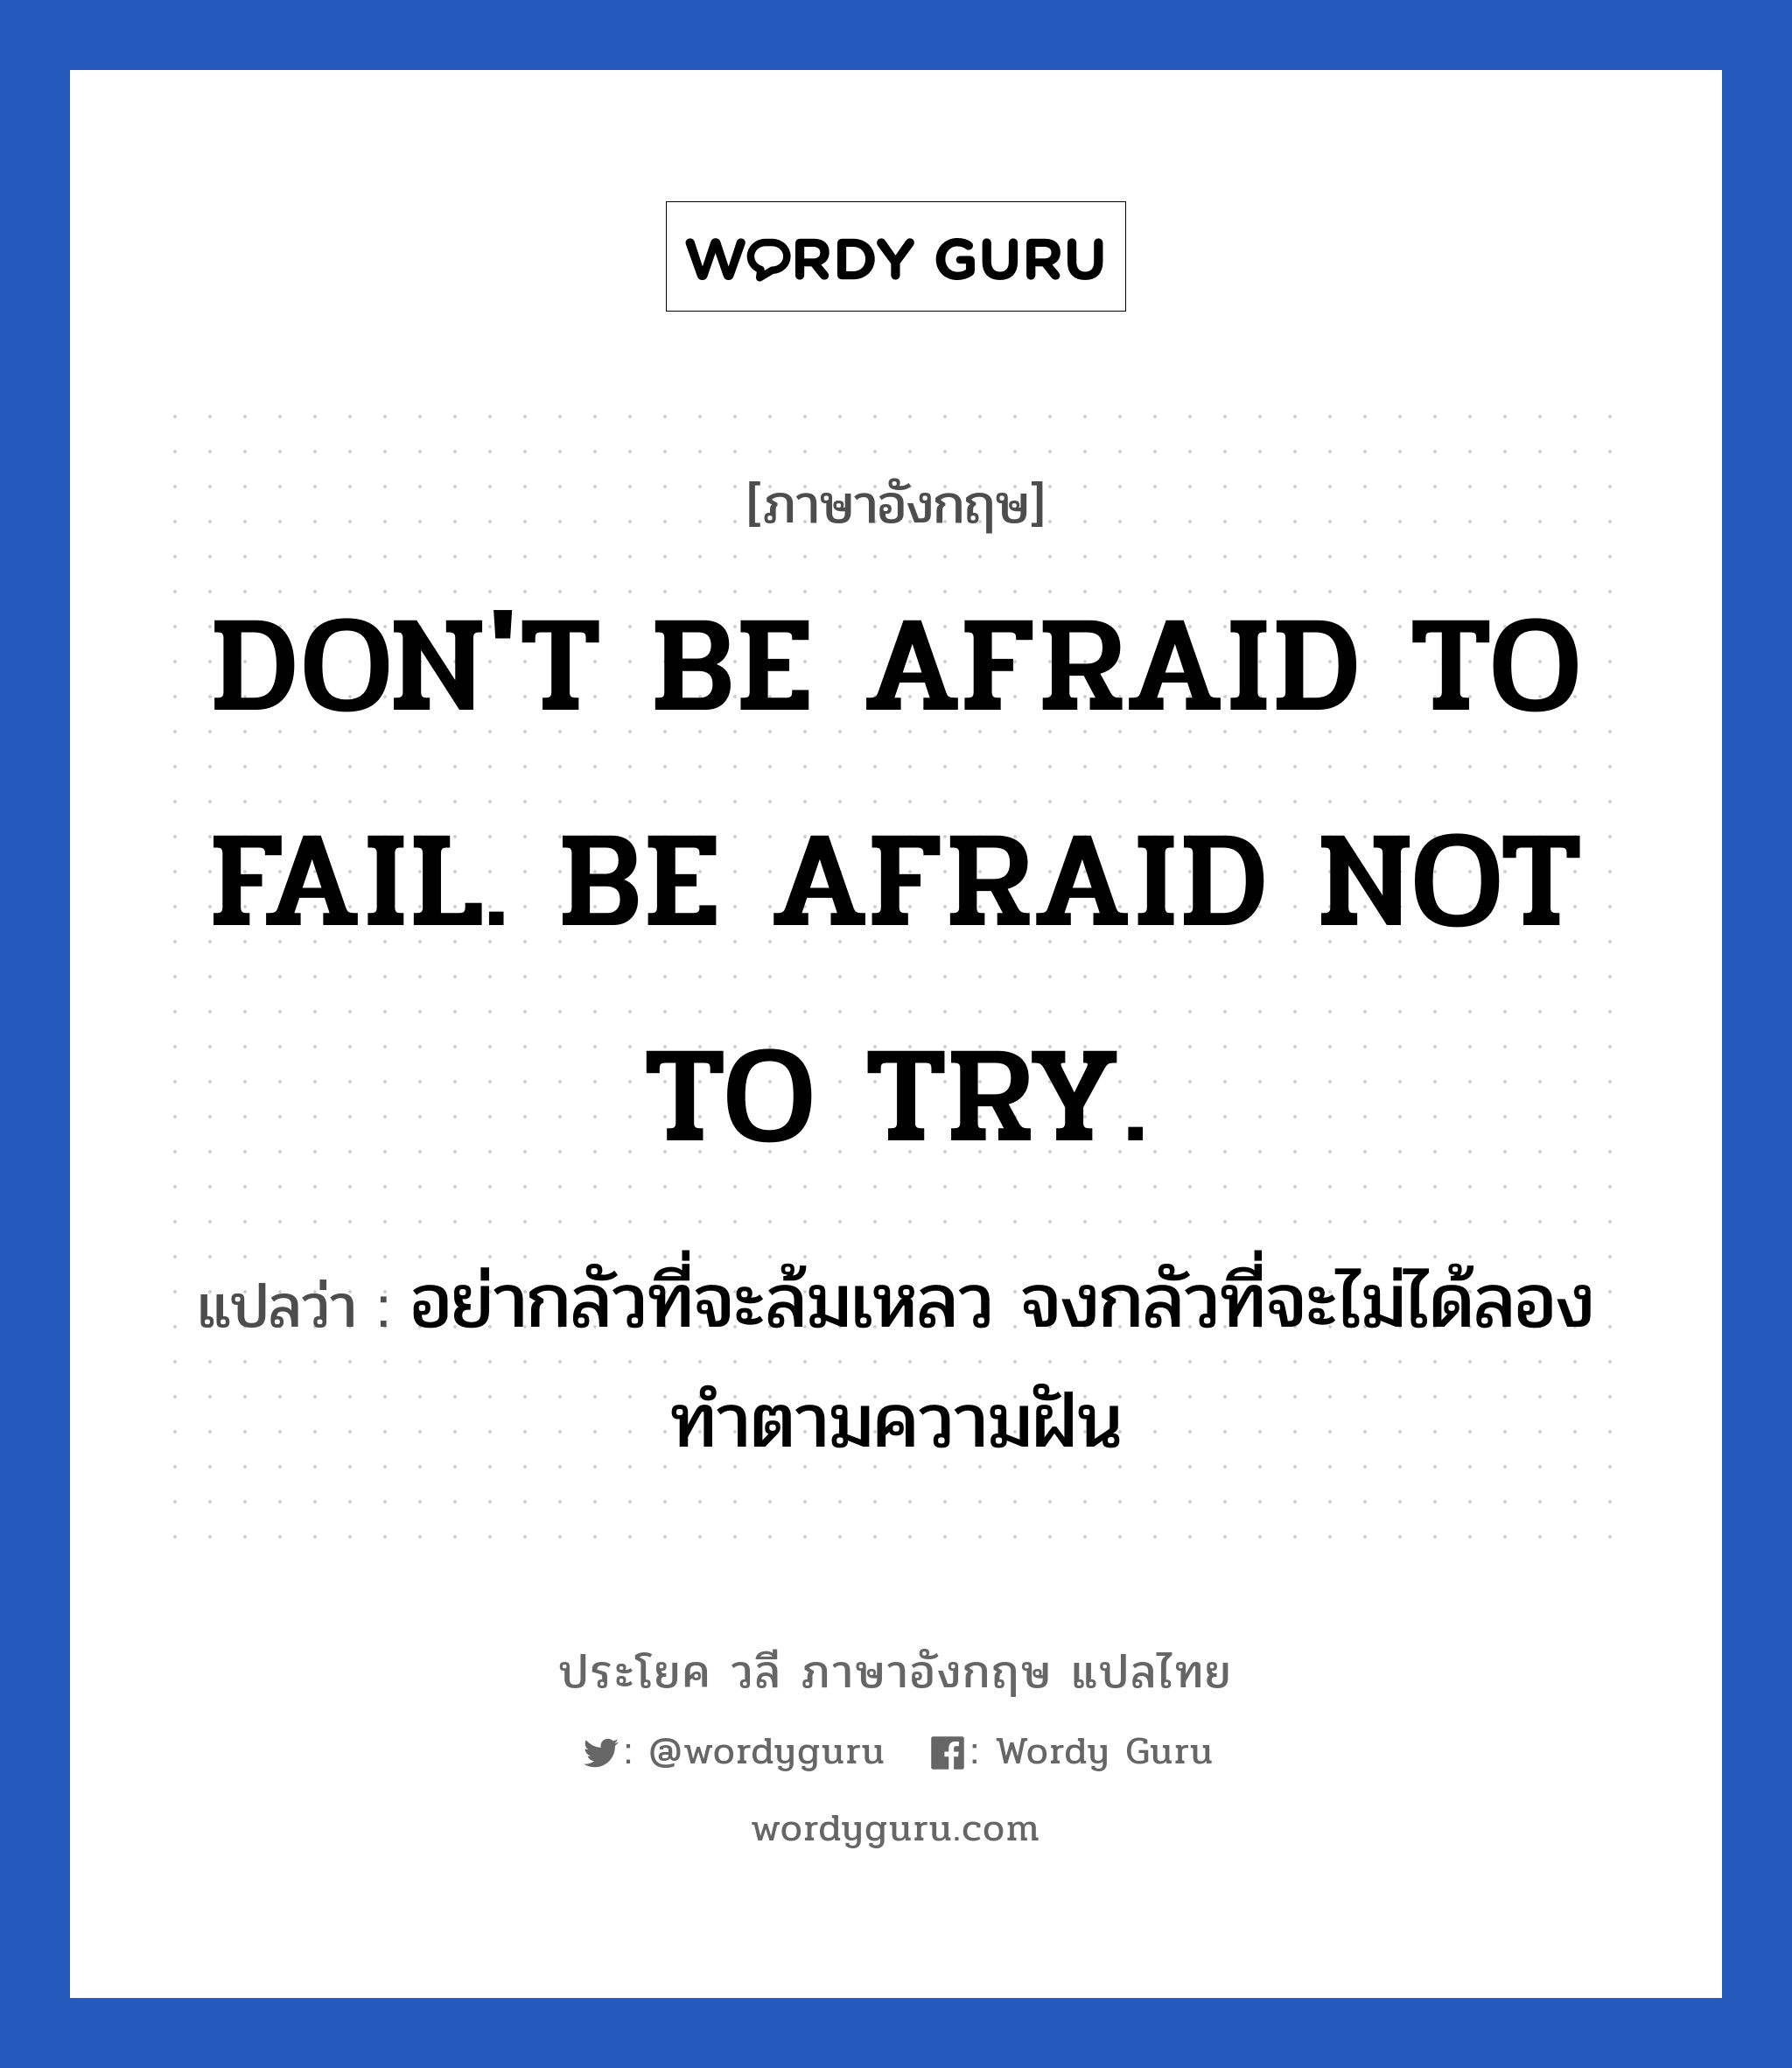 อย่ากลัวที่จะล้มเหลว จงกลัวที่จะไม่ได้ลองทำตามความฝัน ภาษาอังกฤษ?, วลีภาษาอังกฤษ อย่ากลัวที่จะล้มเหลว จงกลัวที่จะไม่ได้ลองทำตามความฝัน แปลว่า DON'T BE AFRAID TO FAIL. BE AFRAID NOT TO TRY. หมวด ในที่ทำงาน